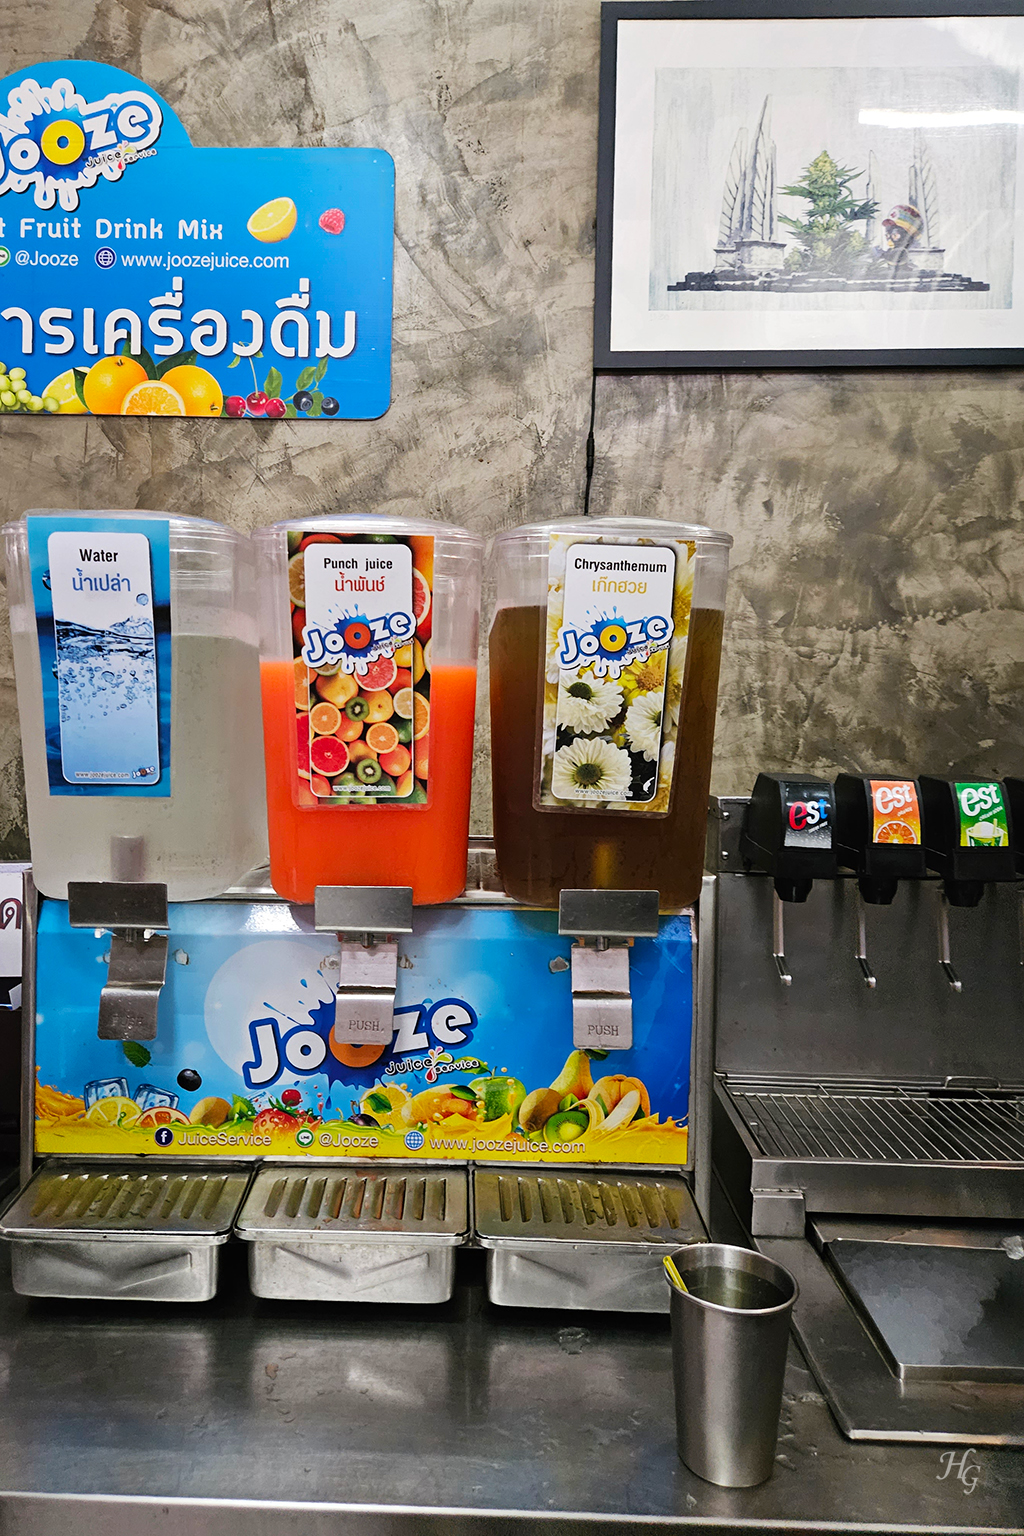 태국 방콕 무까타(หมูกระทะ) 맛집 띧만(ติดมันส์ / Tid Munz Buffet) 음료수 코너